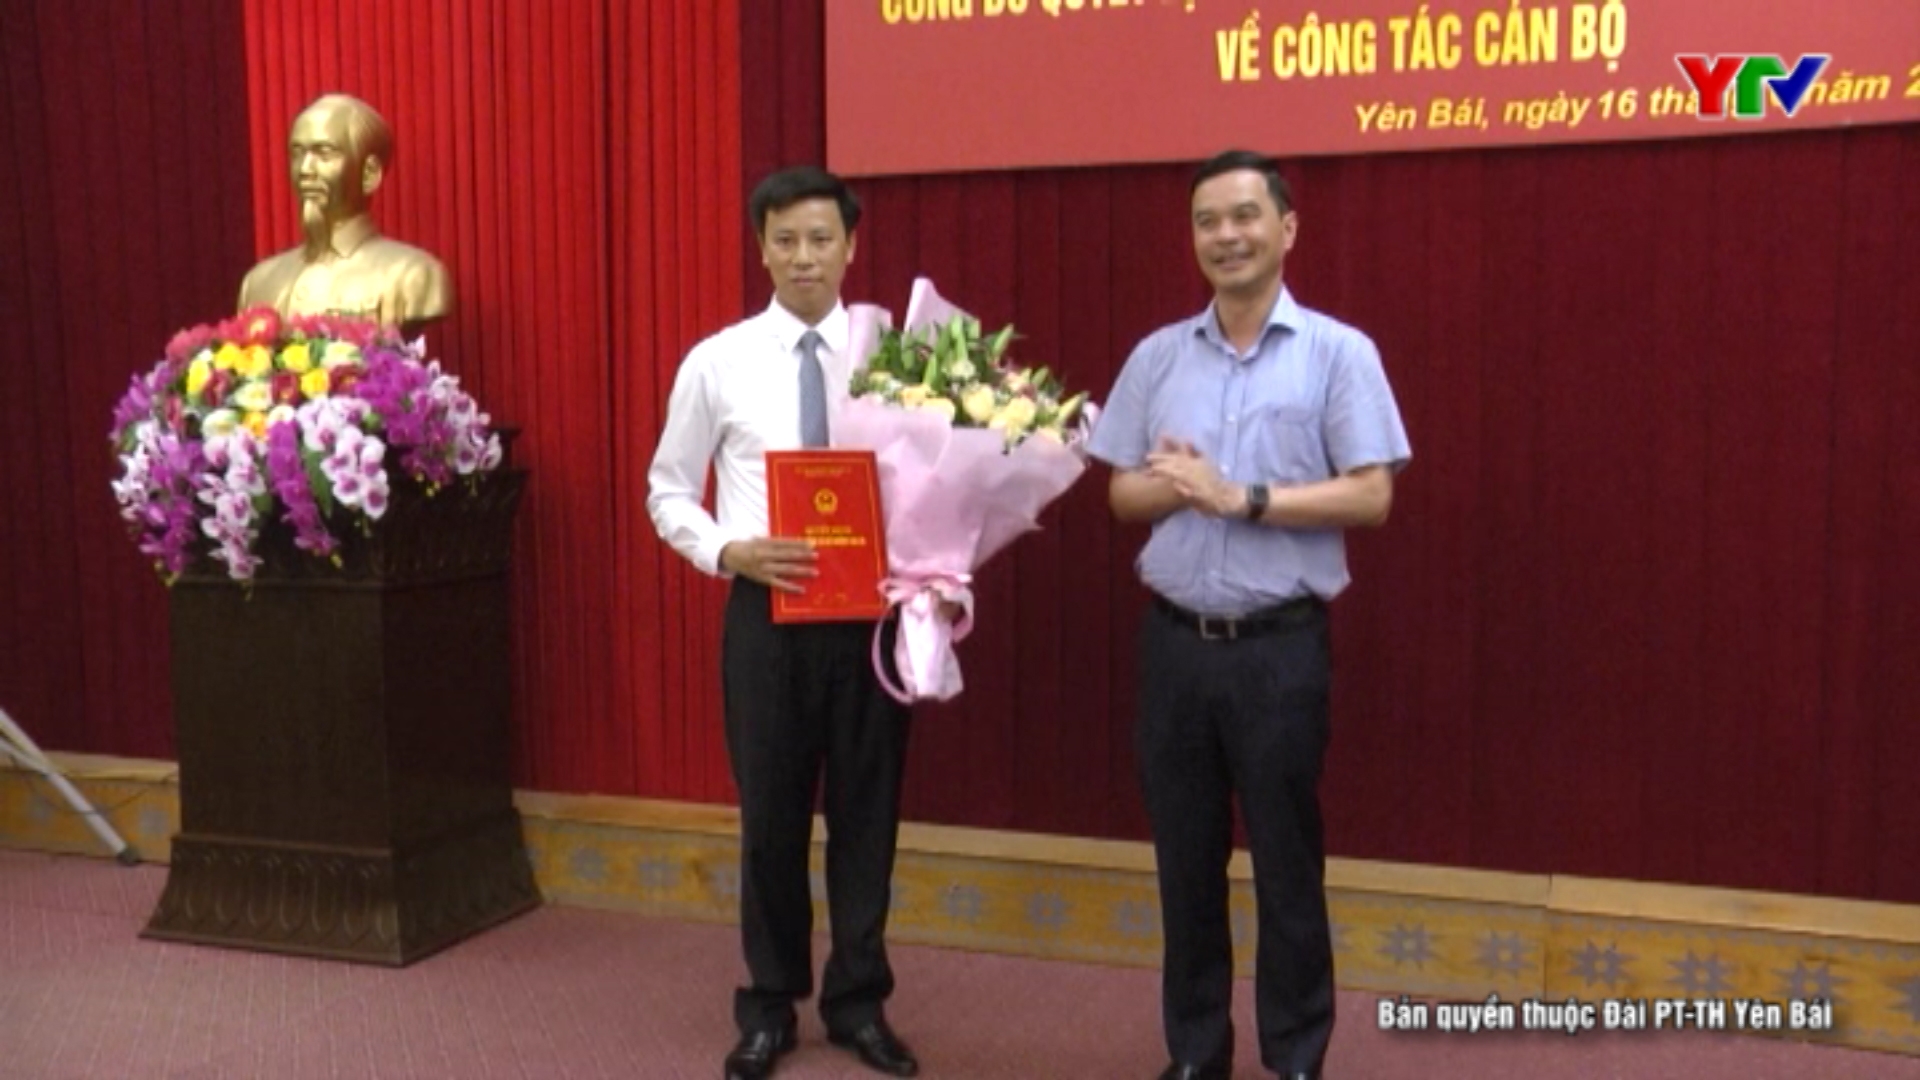 Đồng chí Lê Minh Đức - Phó Chủ tịch UBND huyện Văn Yên được bổ nhiệm giữ chức Phó Giám đốc Sở Giáo dục và Đào tạo